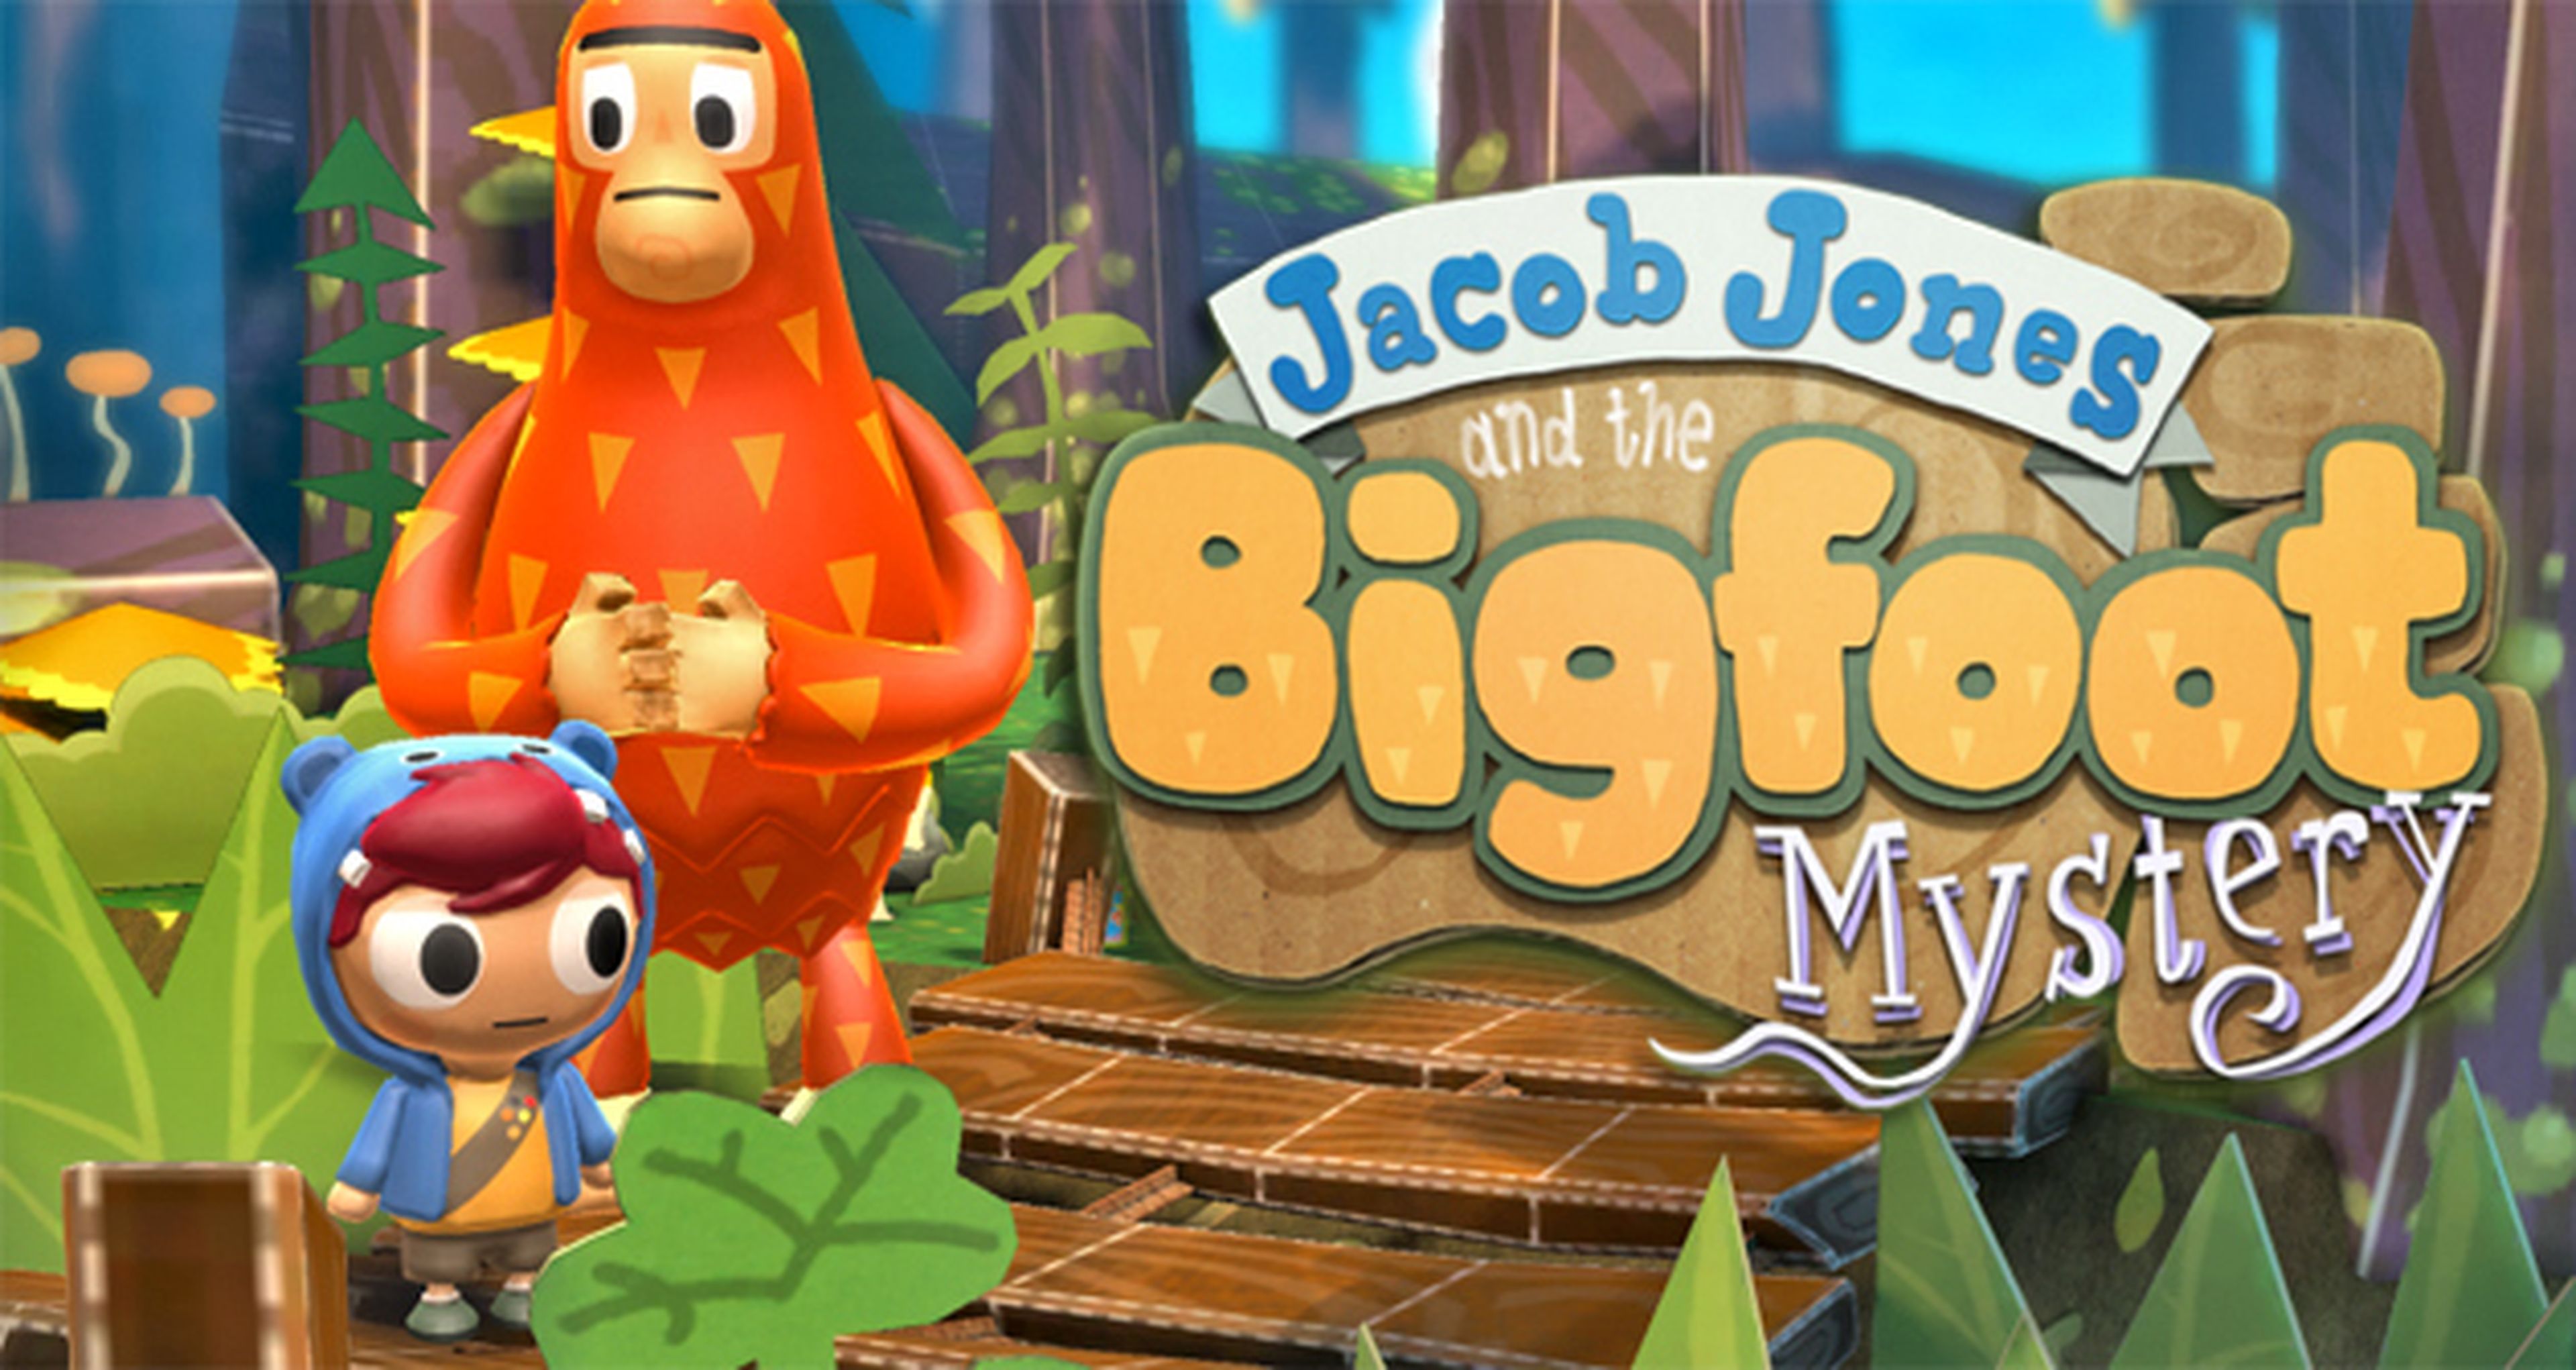 Análisis de Jacob Jones and the Bigfoot Mistery